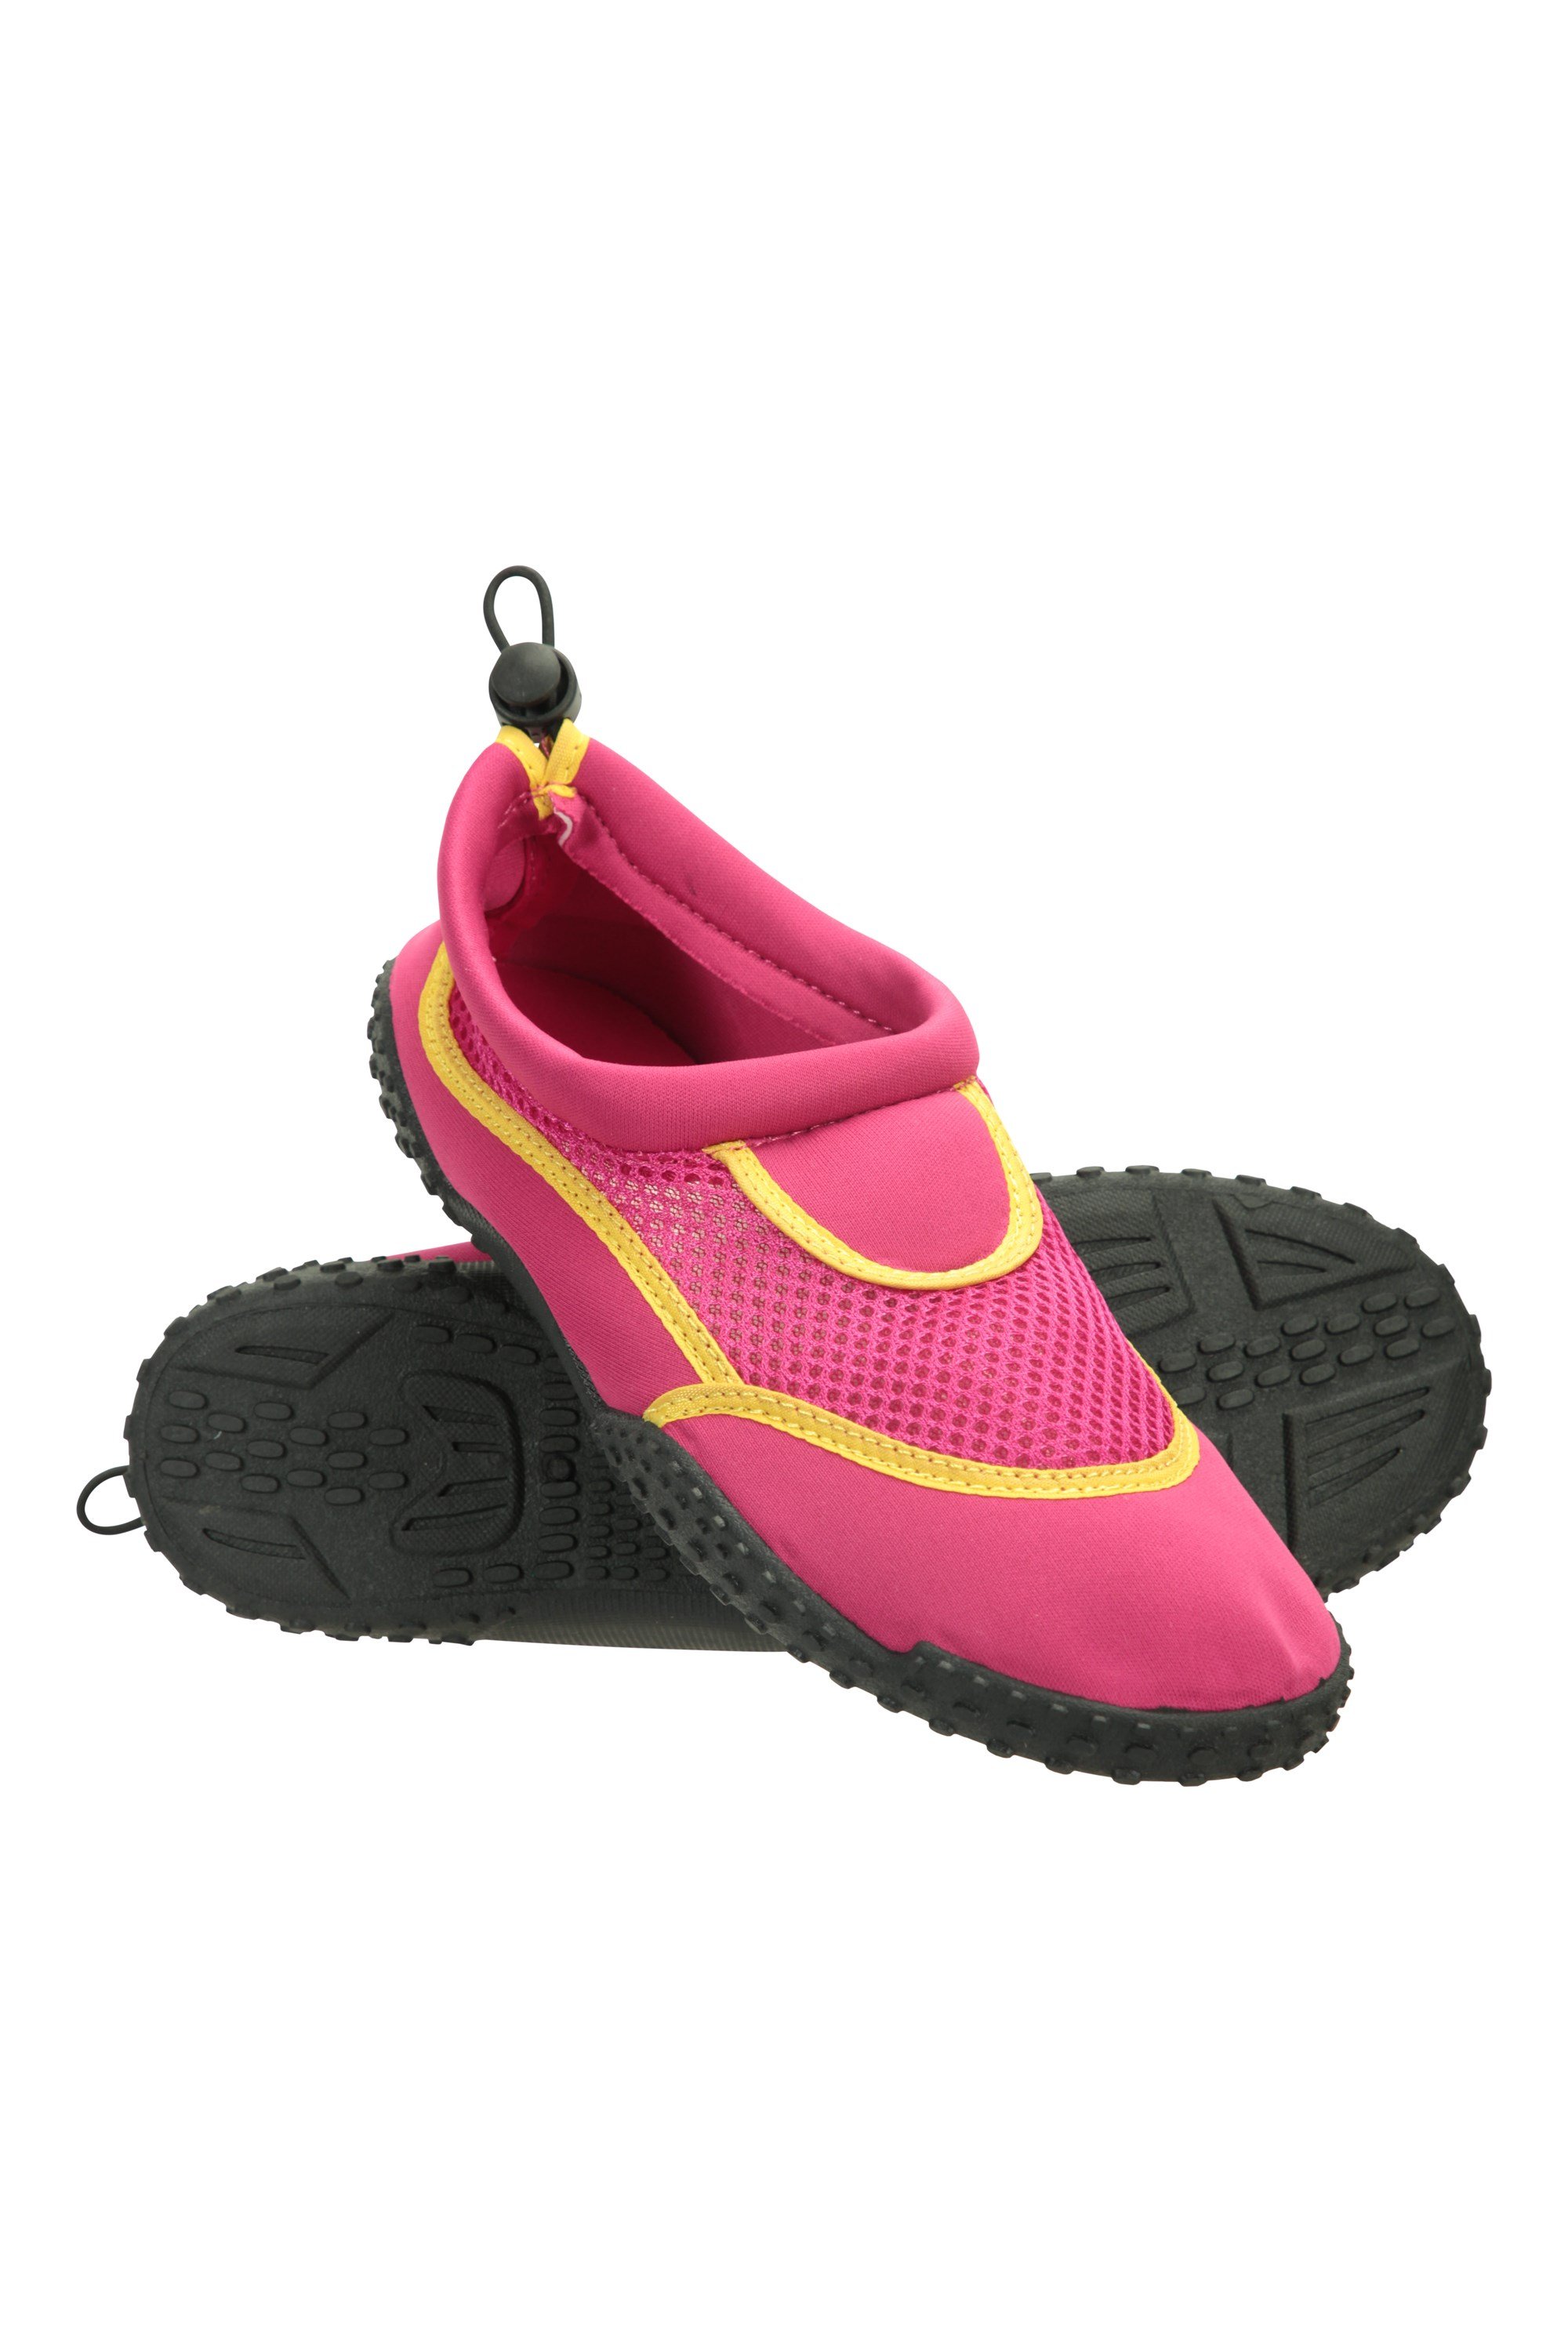 Bermuda Womens Adjustable Aqua Shoes - Pink